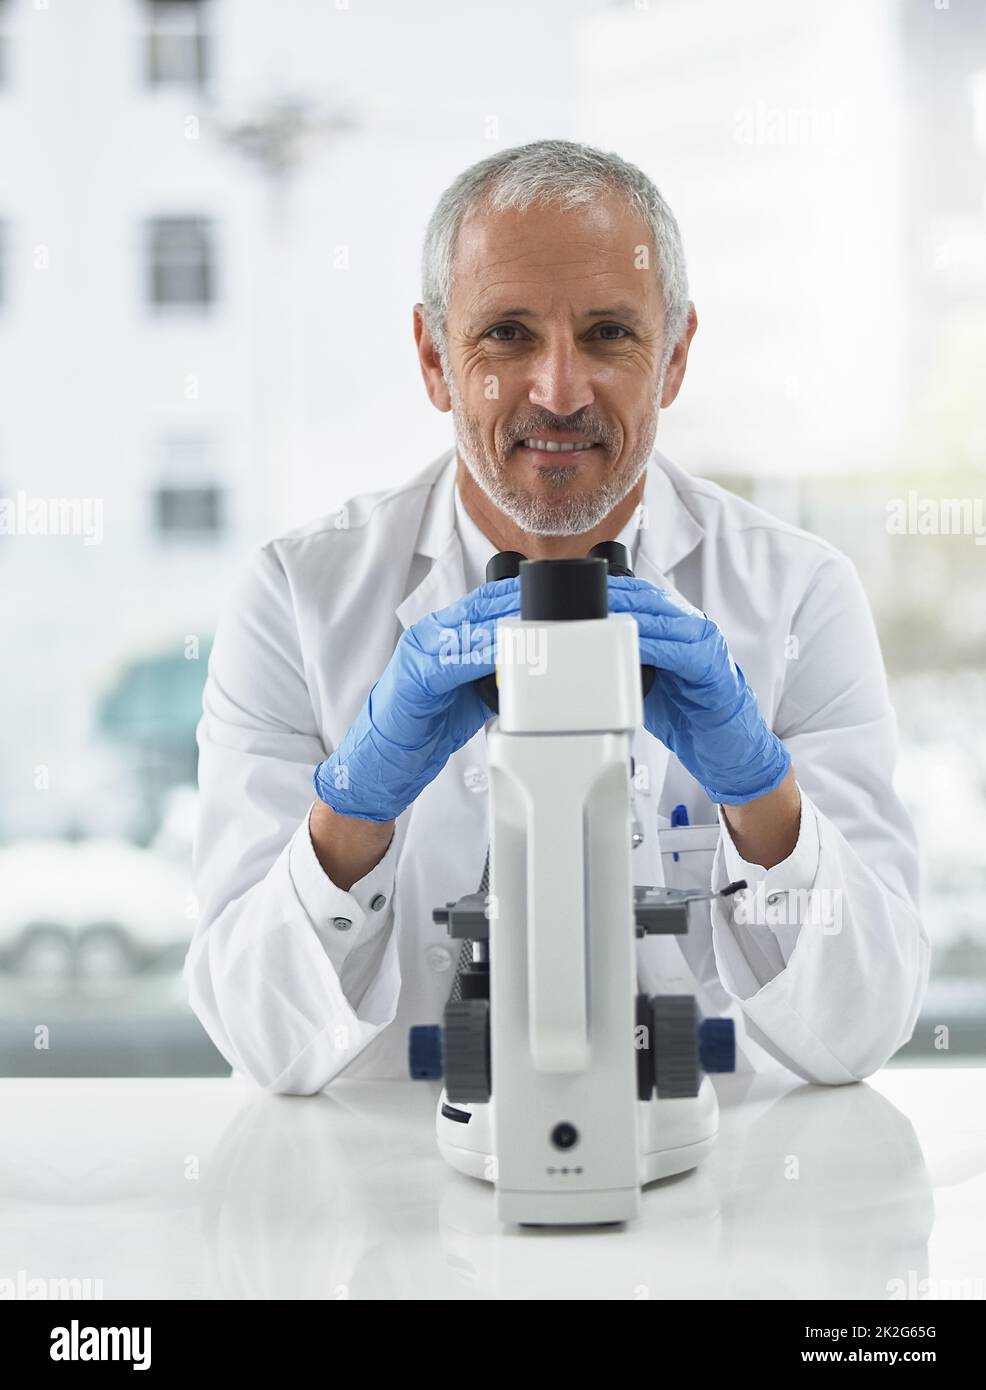 La découverte peut être dans les moindres détails. Portrait d'un chercheur au travail sur un microscope dans un laboratoire. Banque D'Images